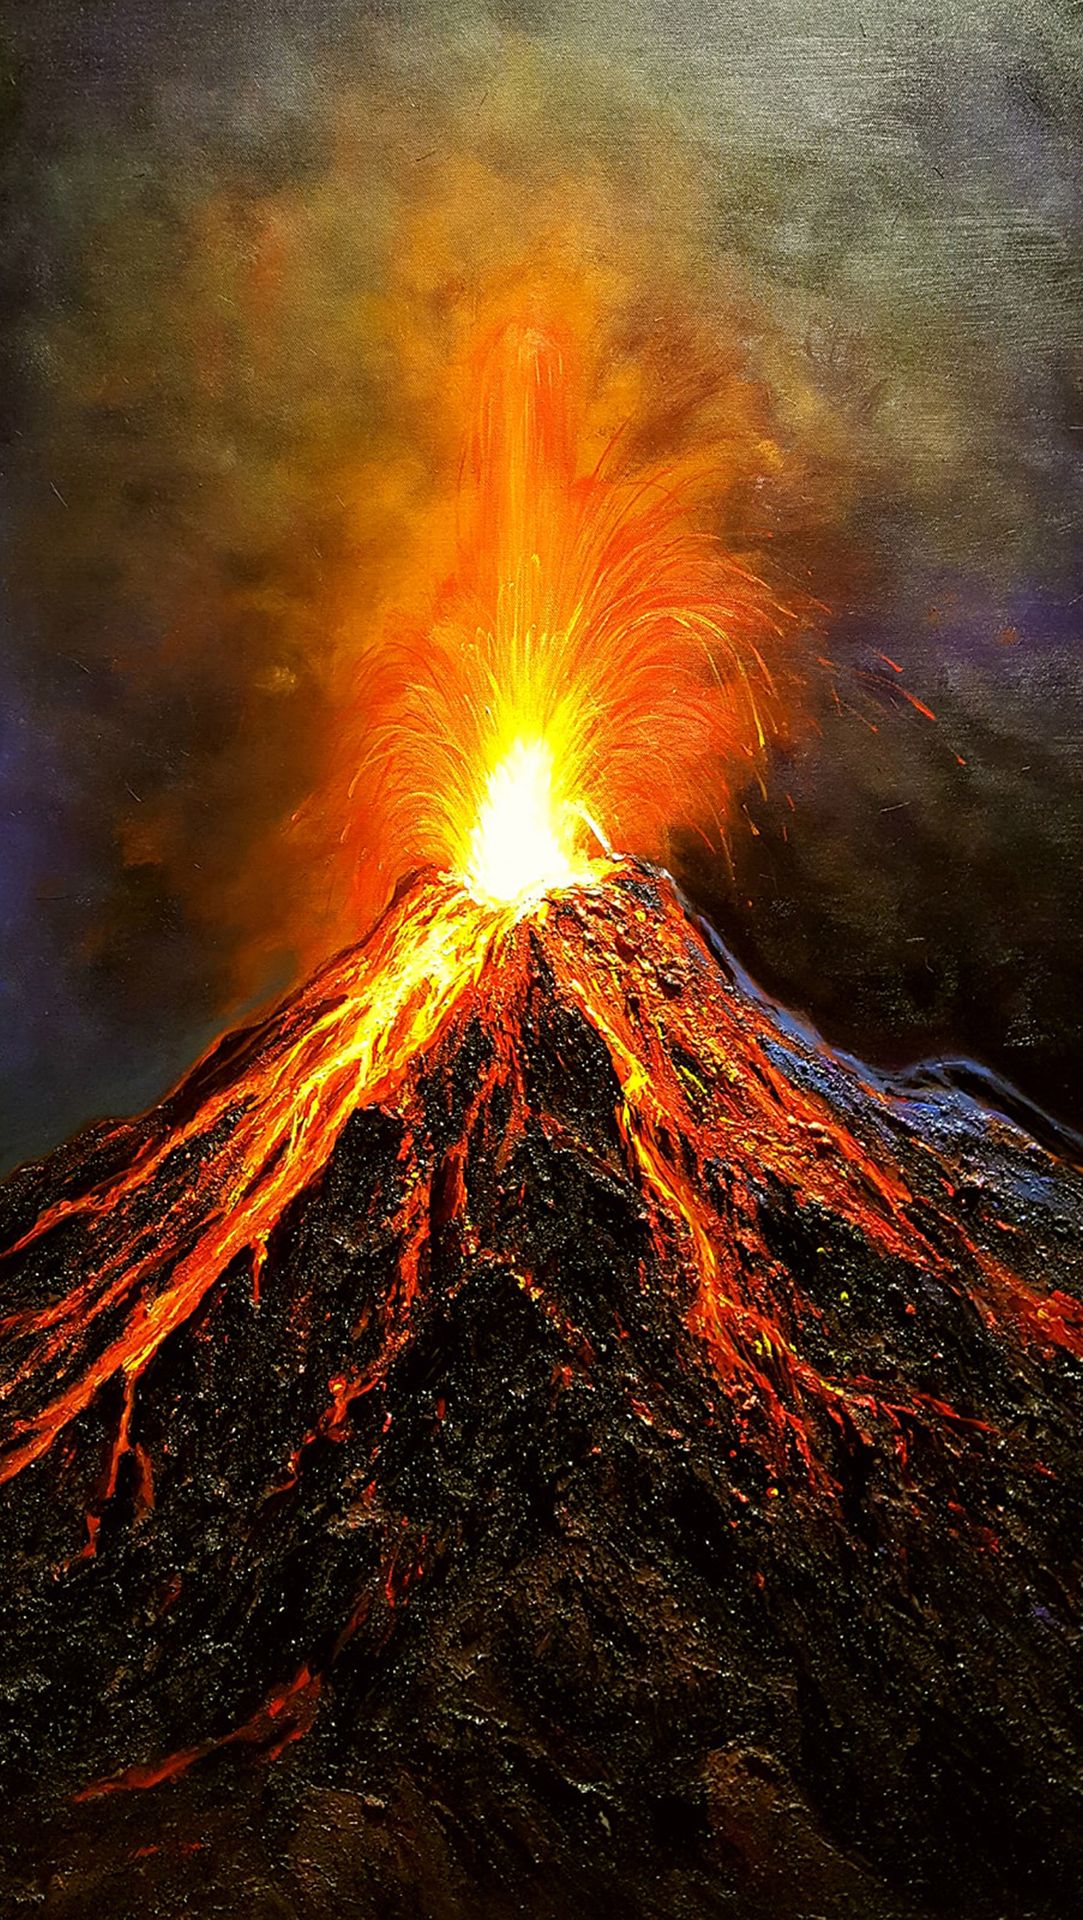 Núi lửa phun trào: Trải nghiệm cảm giác hồi hộp, kích thích khi đứng đối diện với một phong cảnh đầy hiểm nguy. Chuyến đi khám phá núi lửa phun trào sẽ đem lại cho bạn những trải nghiệm khó quên. Hãy đến và chứng kiến sức mạnh đáng kinh ngạc của thiên nhiên.